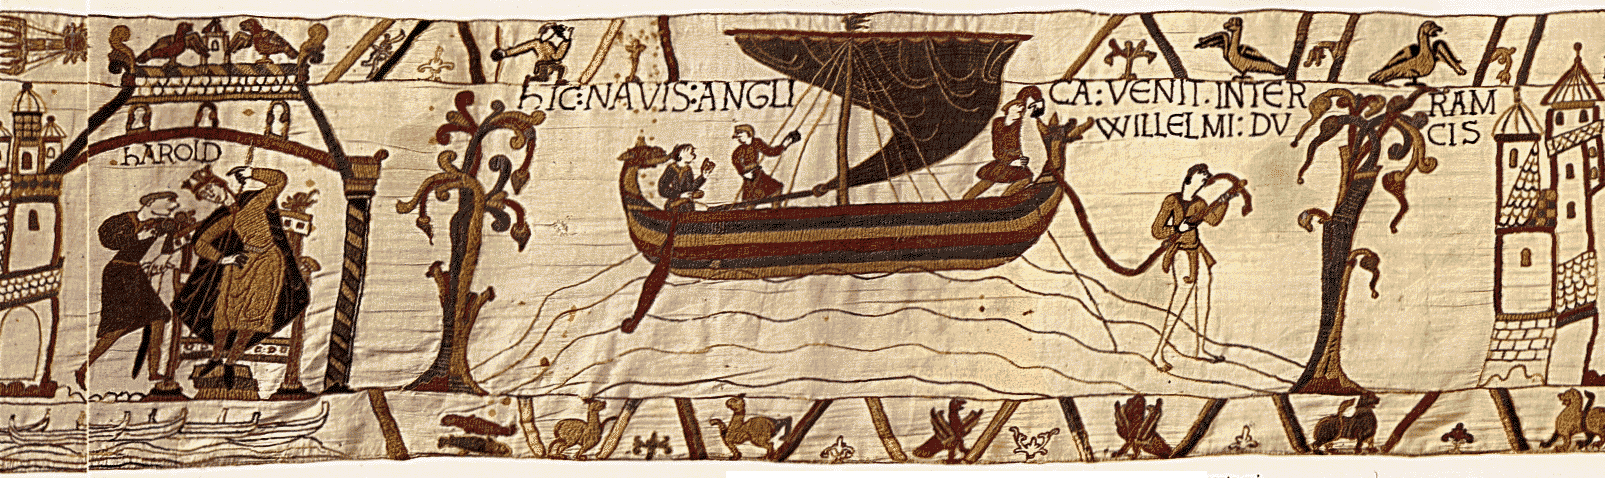 1066 battle of hastings. Battle of Hastings in 1066